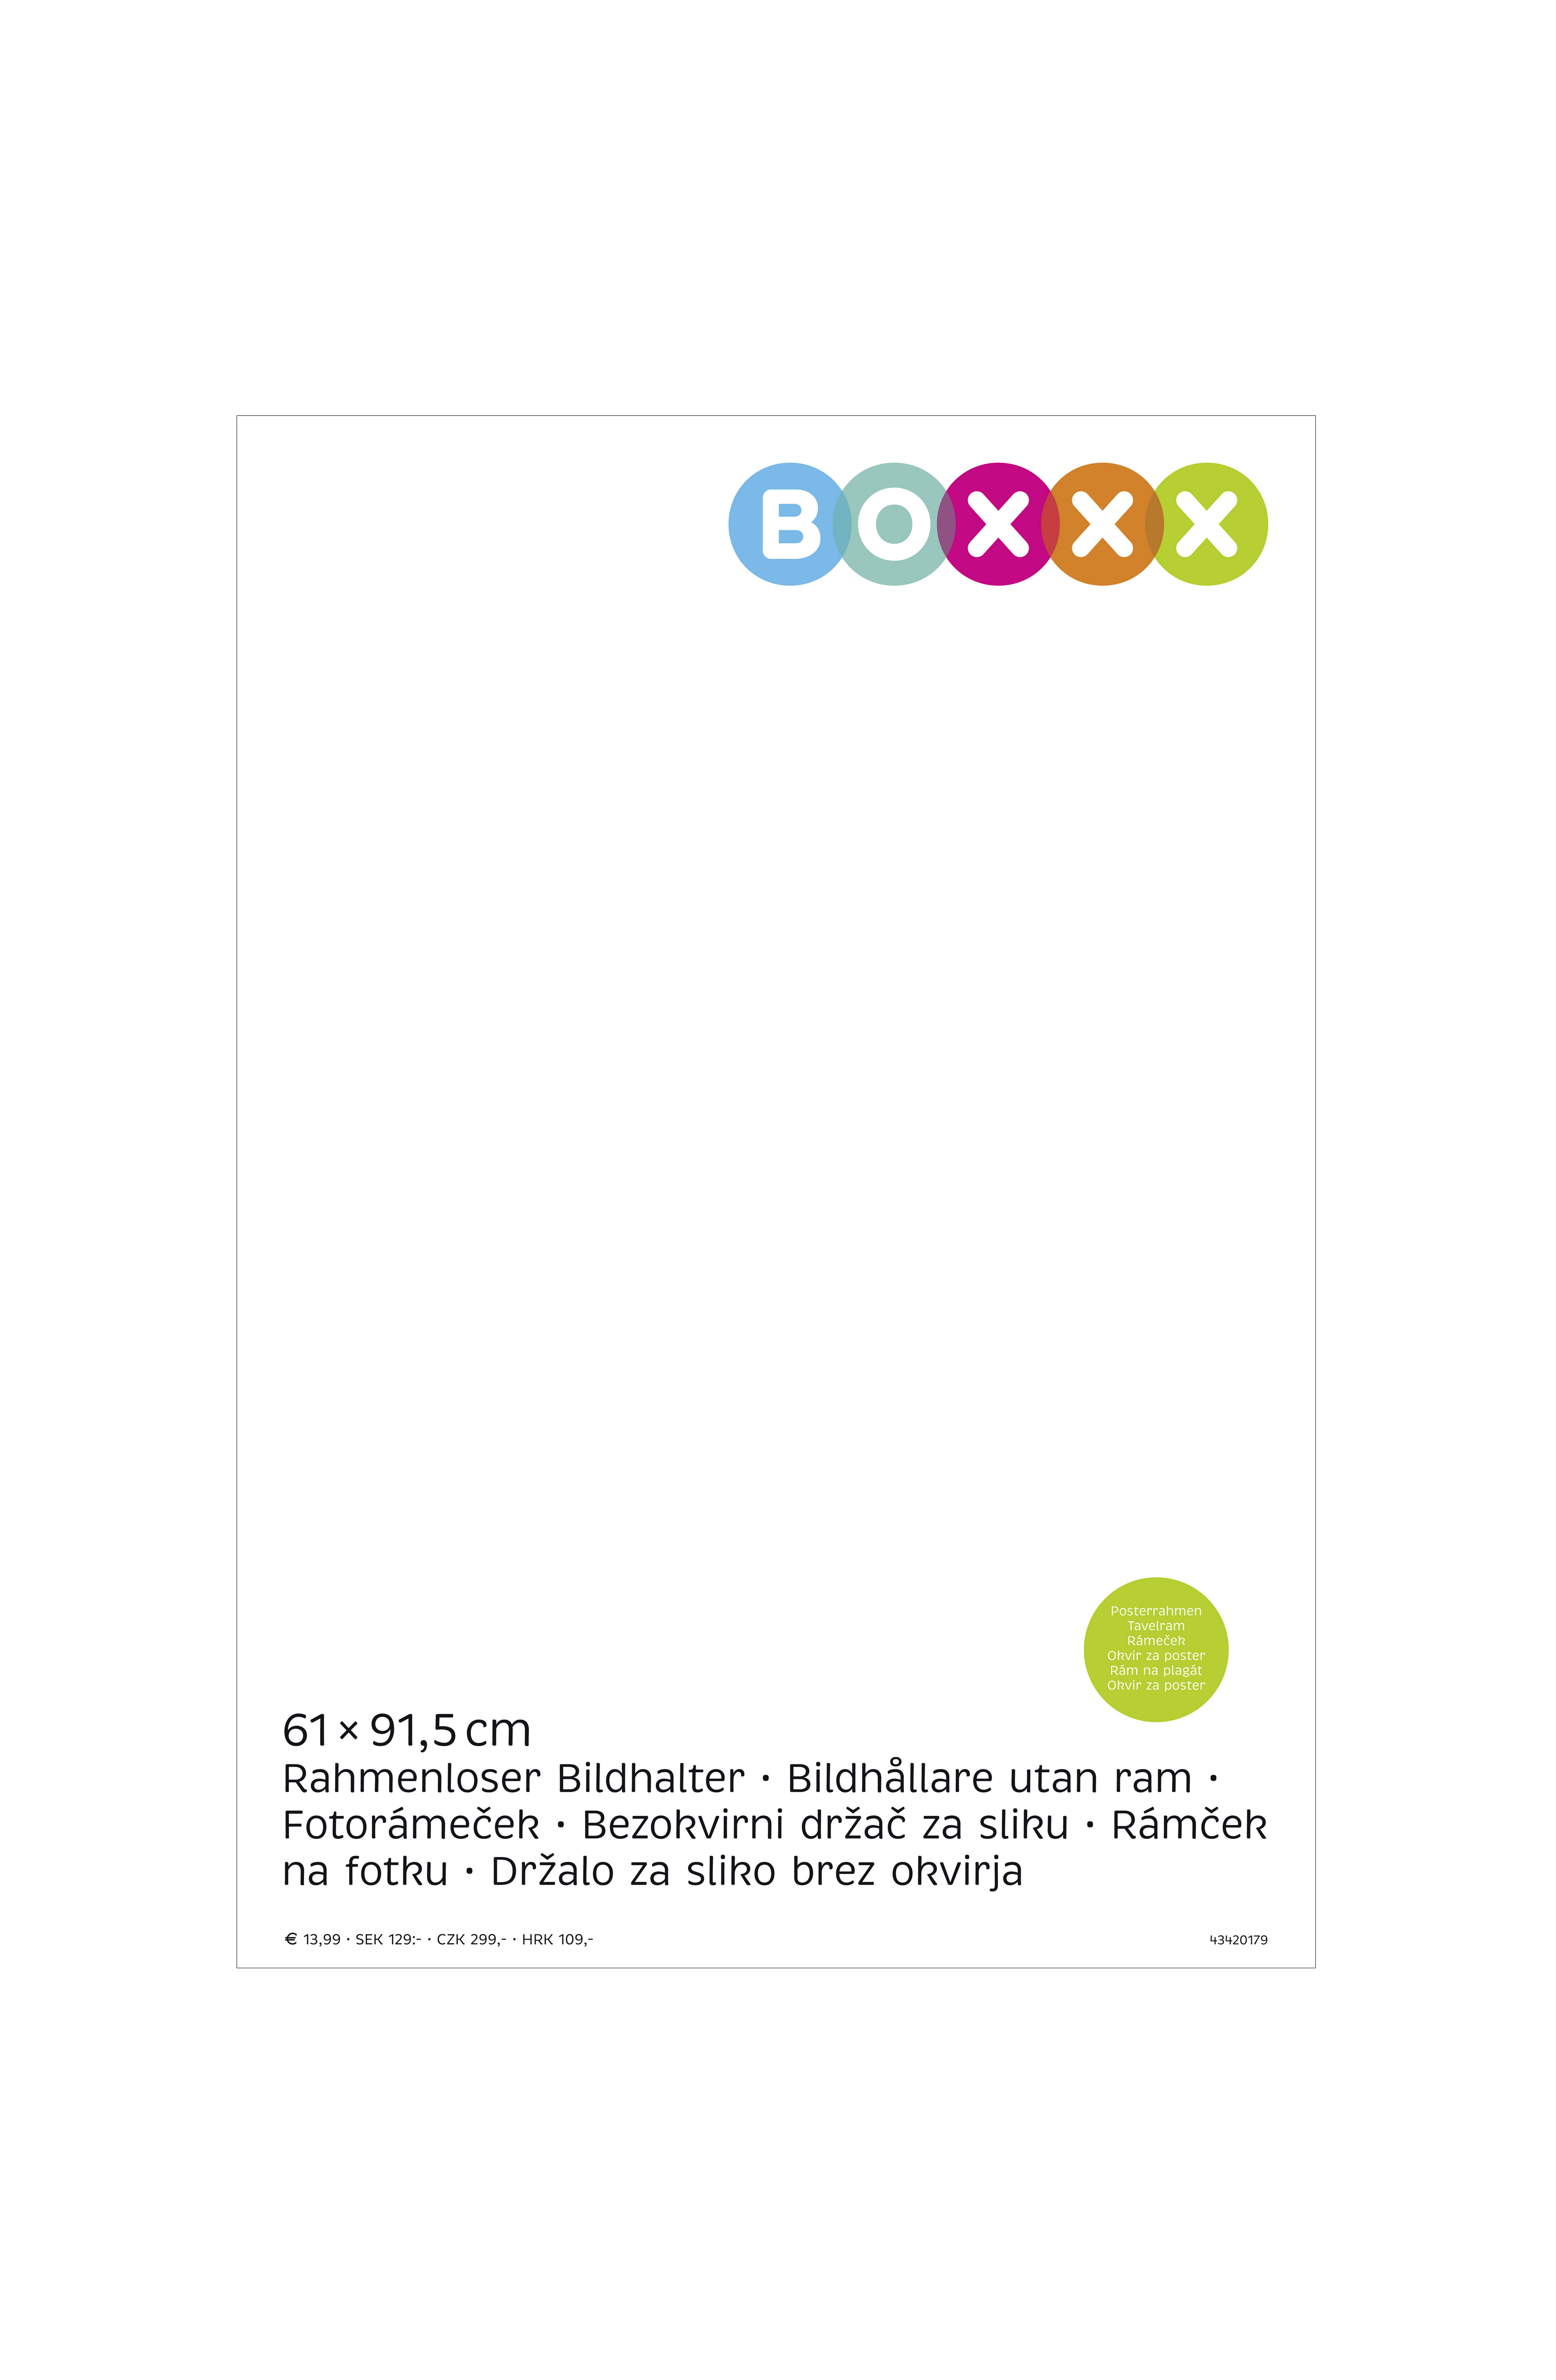 okvir 62X93CM  91.5/61/1 cm        - prozirno, Basics, staklo (91.5/61/1cm) - Boxxx